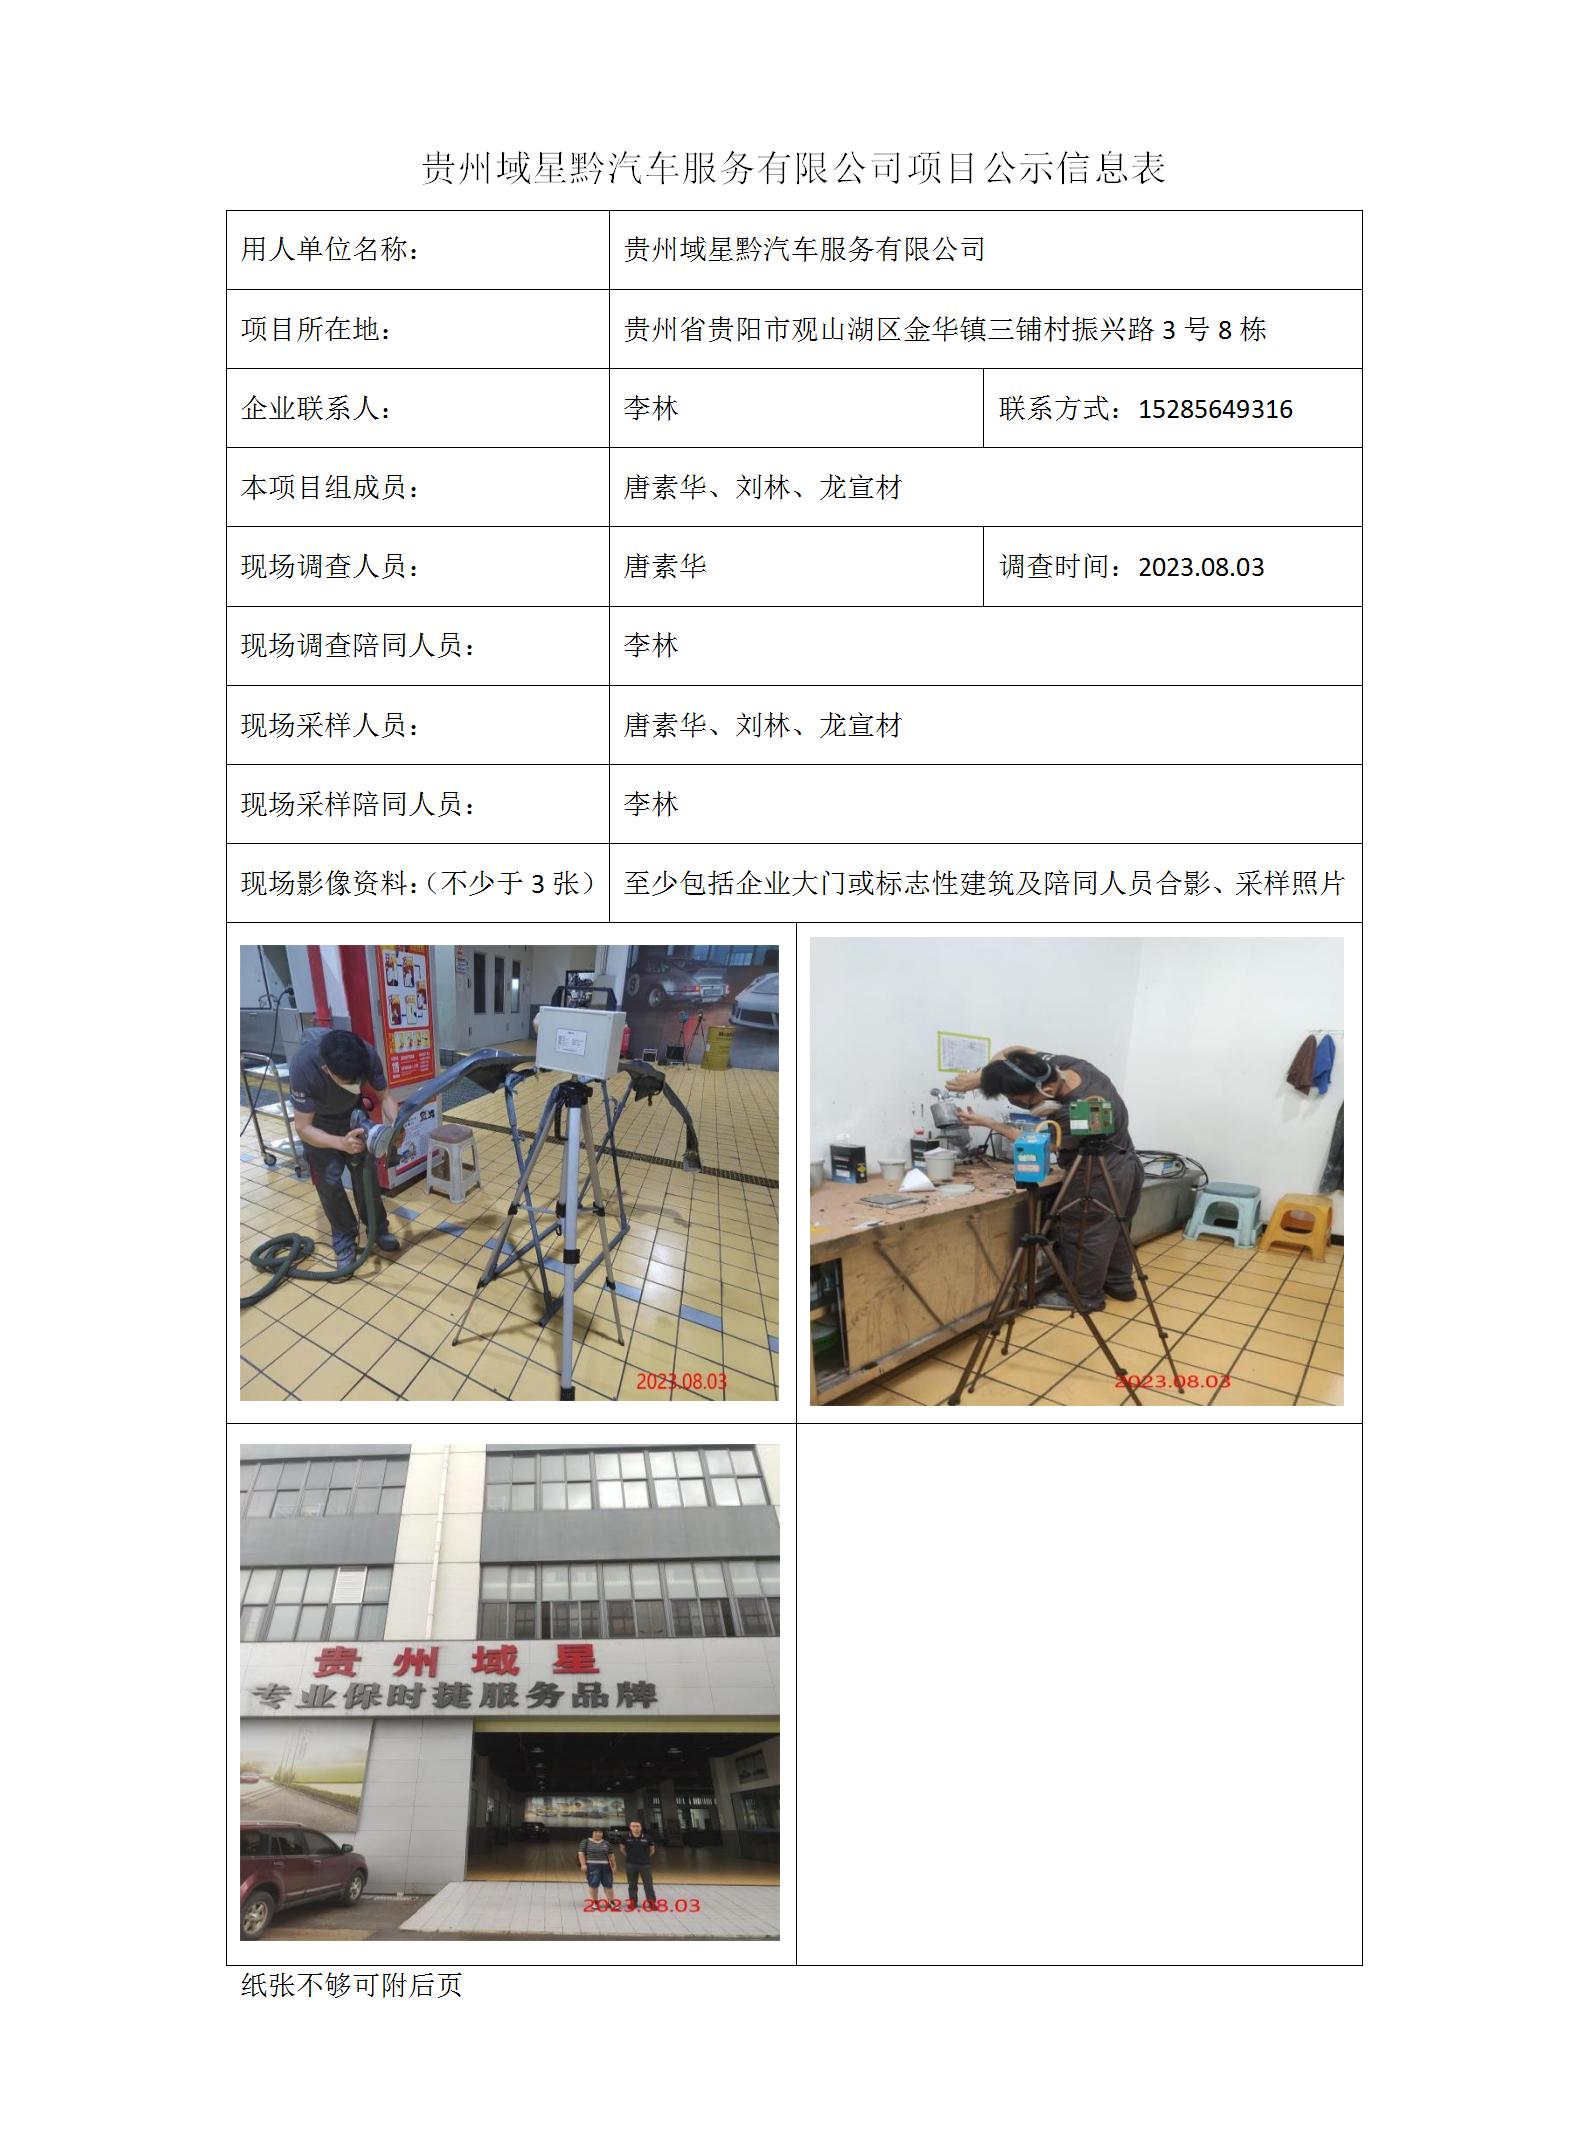 贵州域星黔汽车服务有限公司项目公示信息表_01.jpg